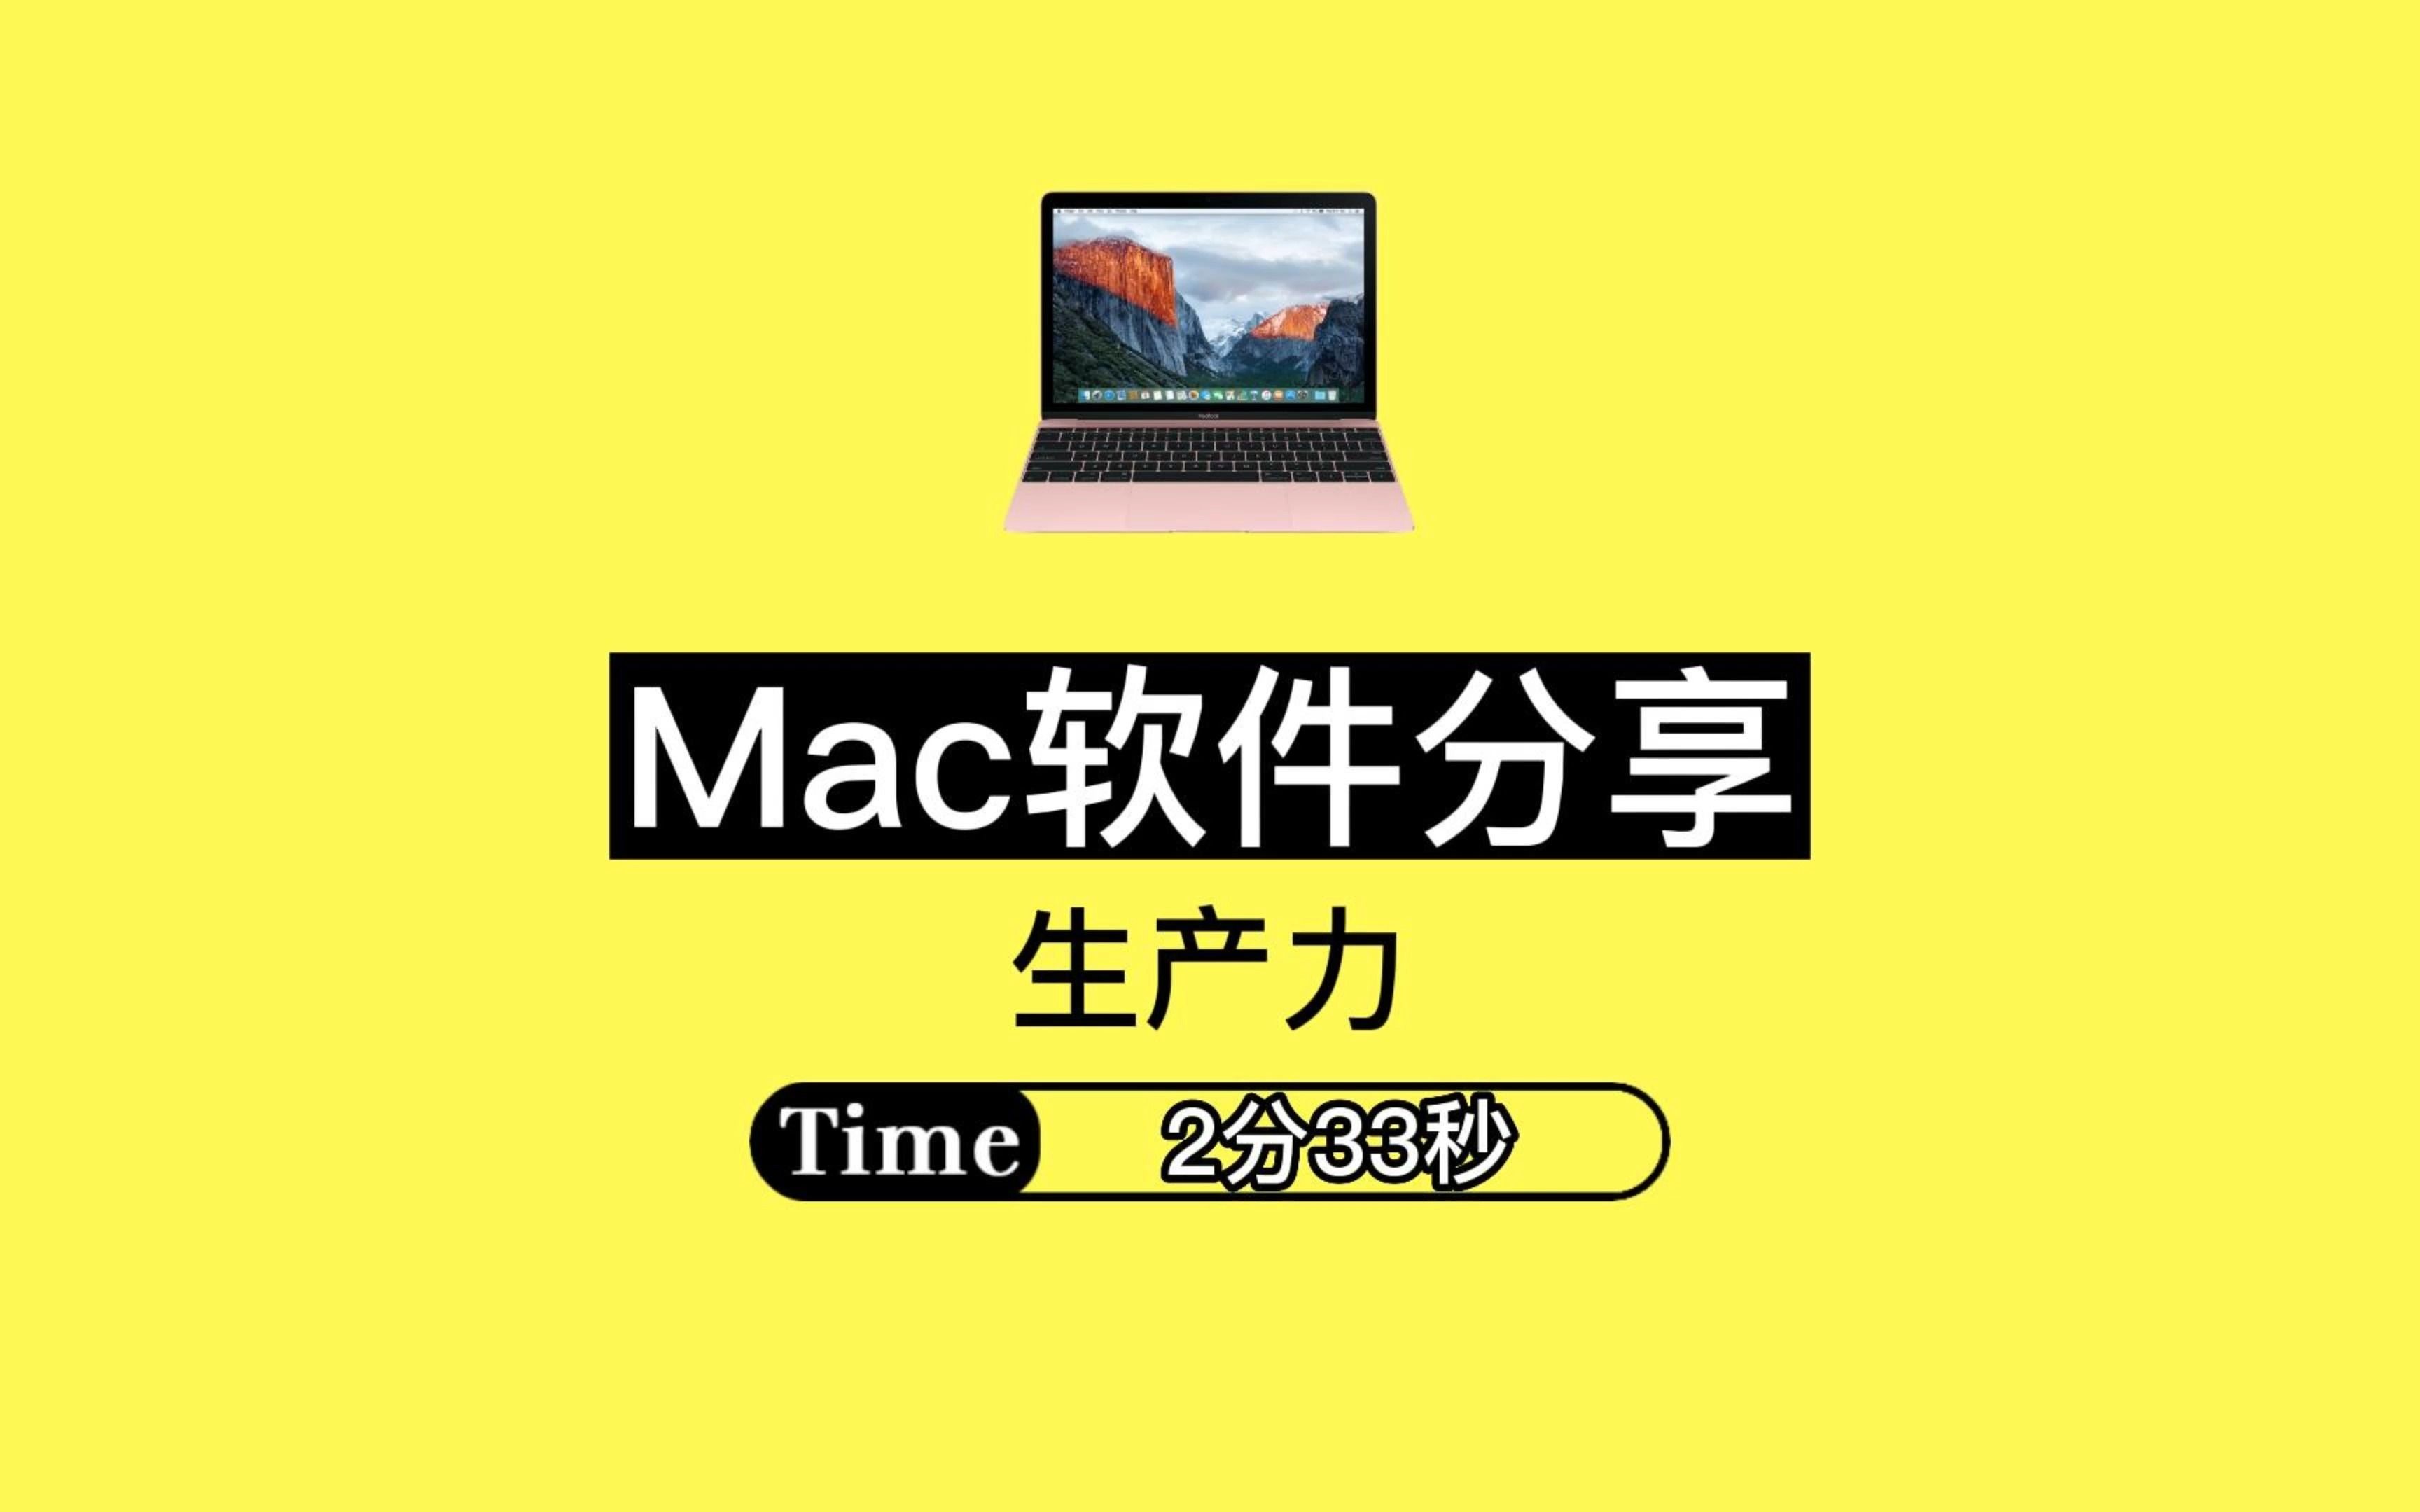 【程序员必备】Mac优秀软件分享